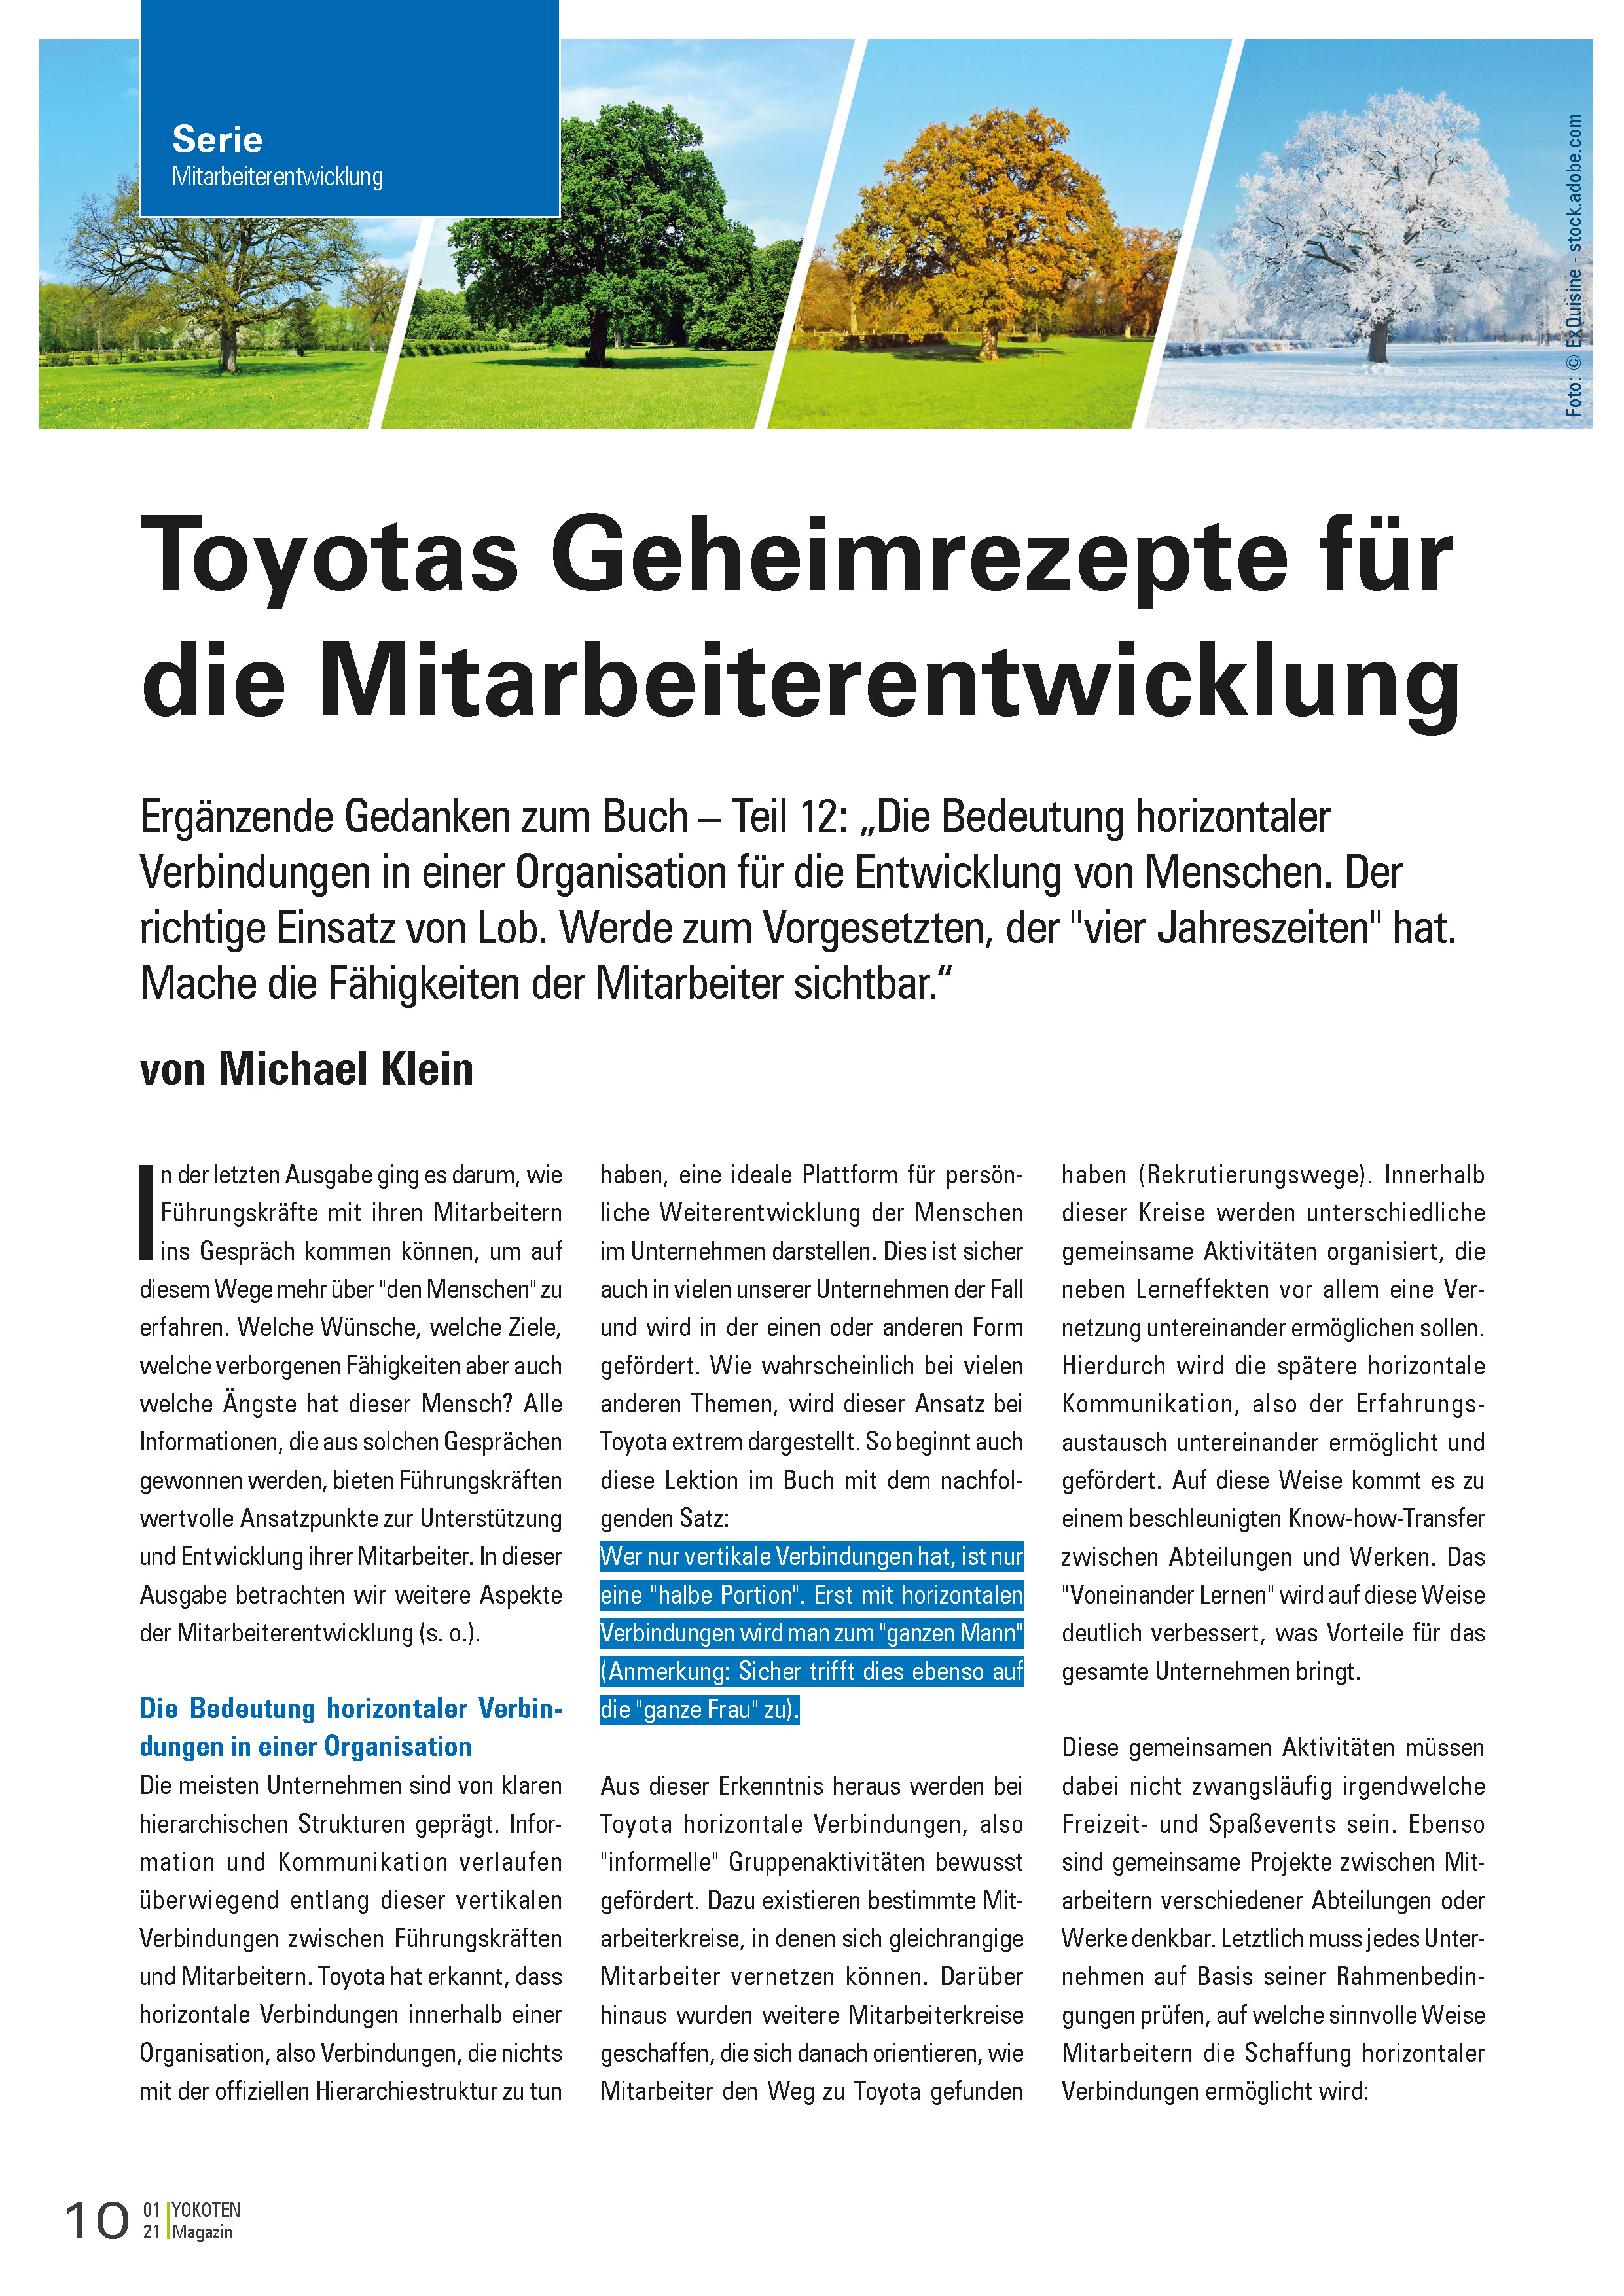 YOKOTEN-Artikel: Toyotas Geheimrezepte für die Mitarbeiterentwicklung, Teil 12 